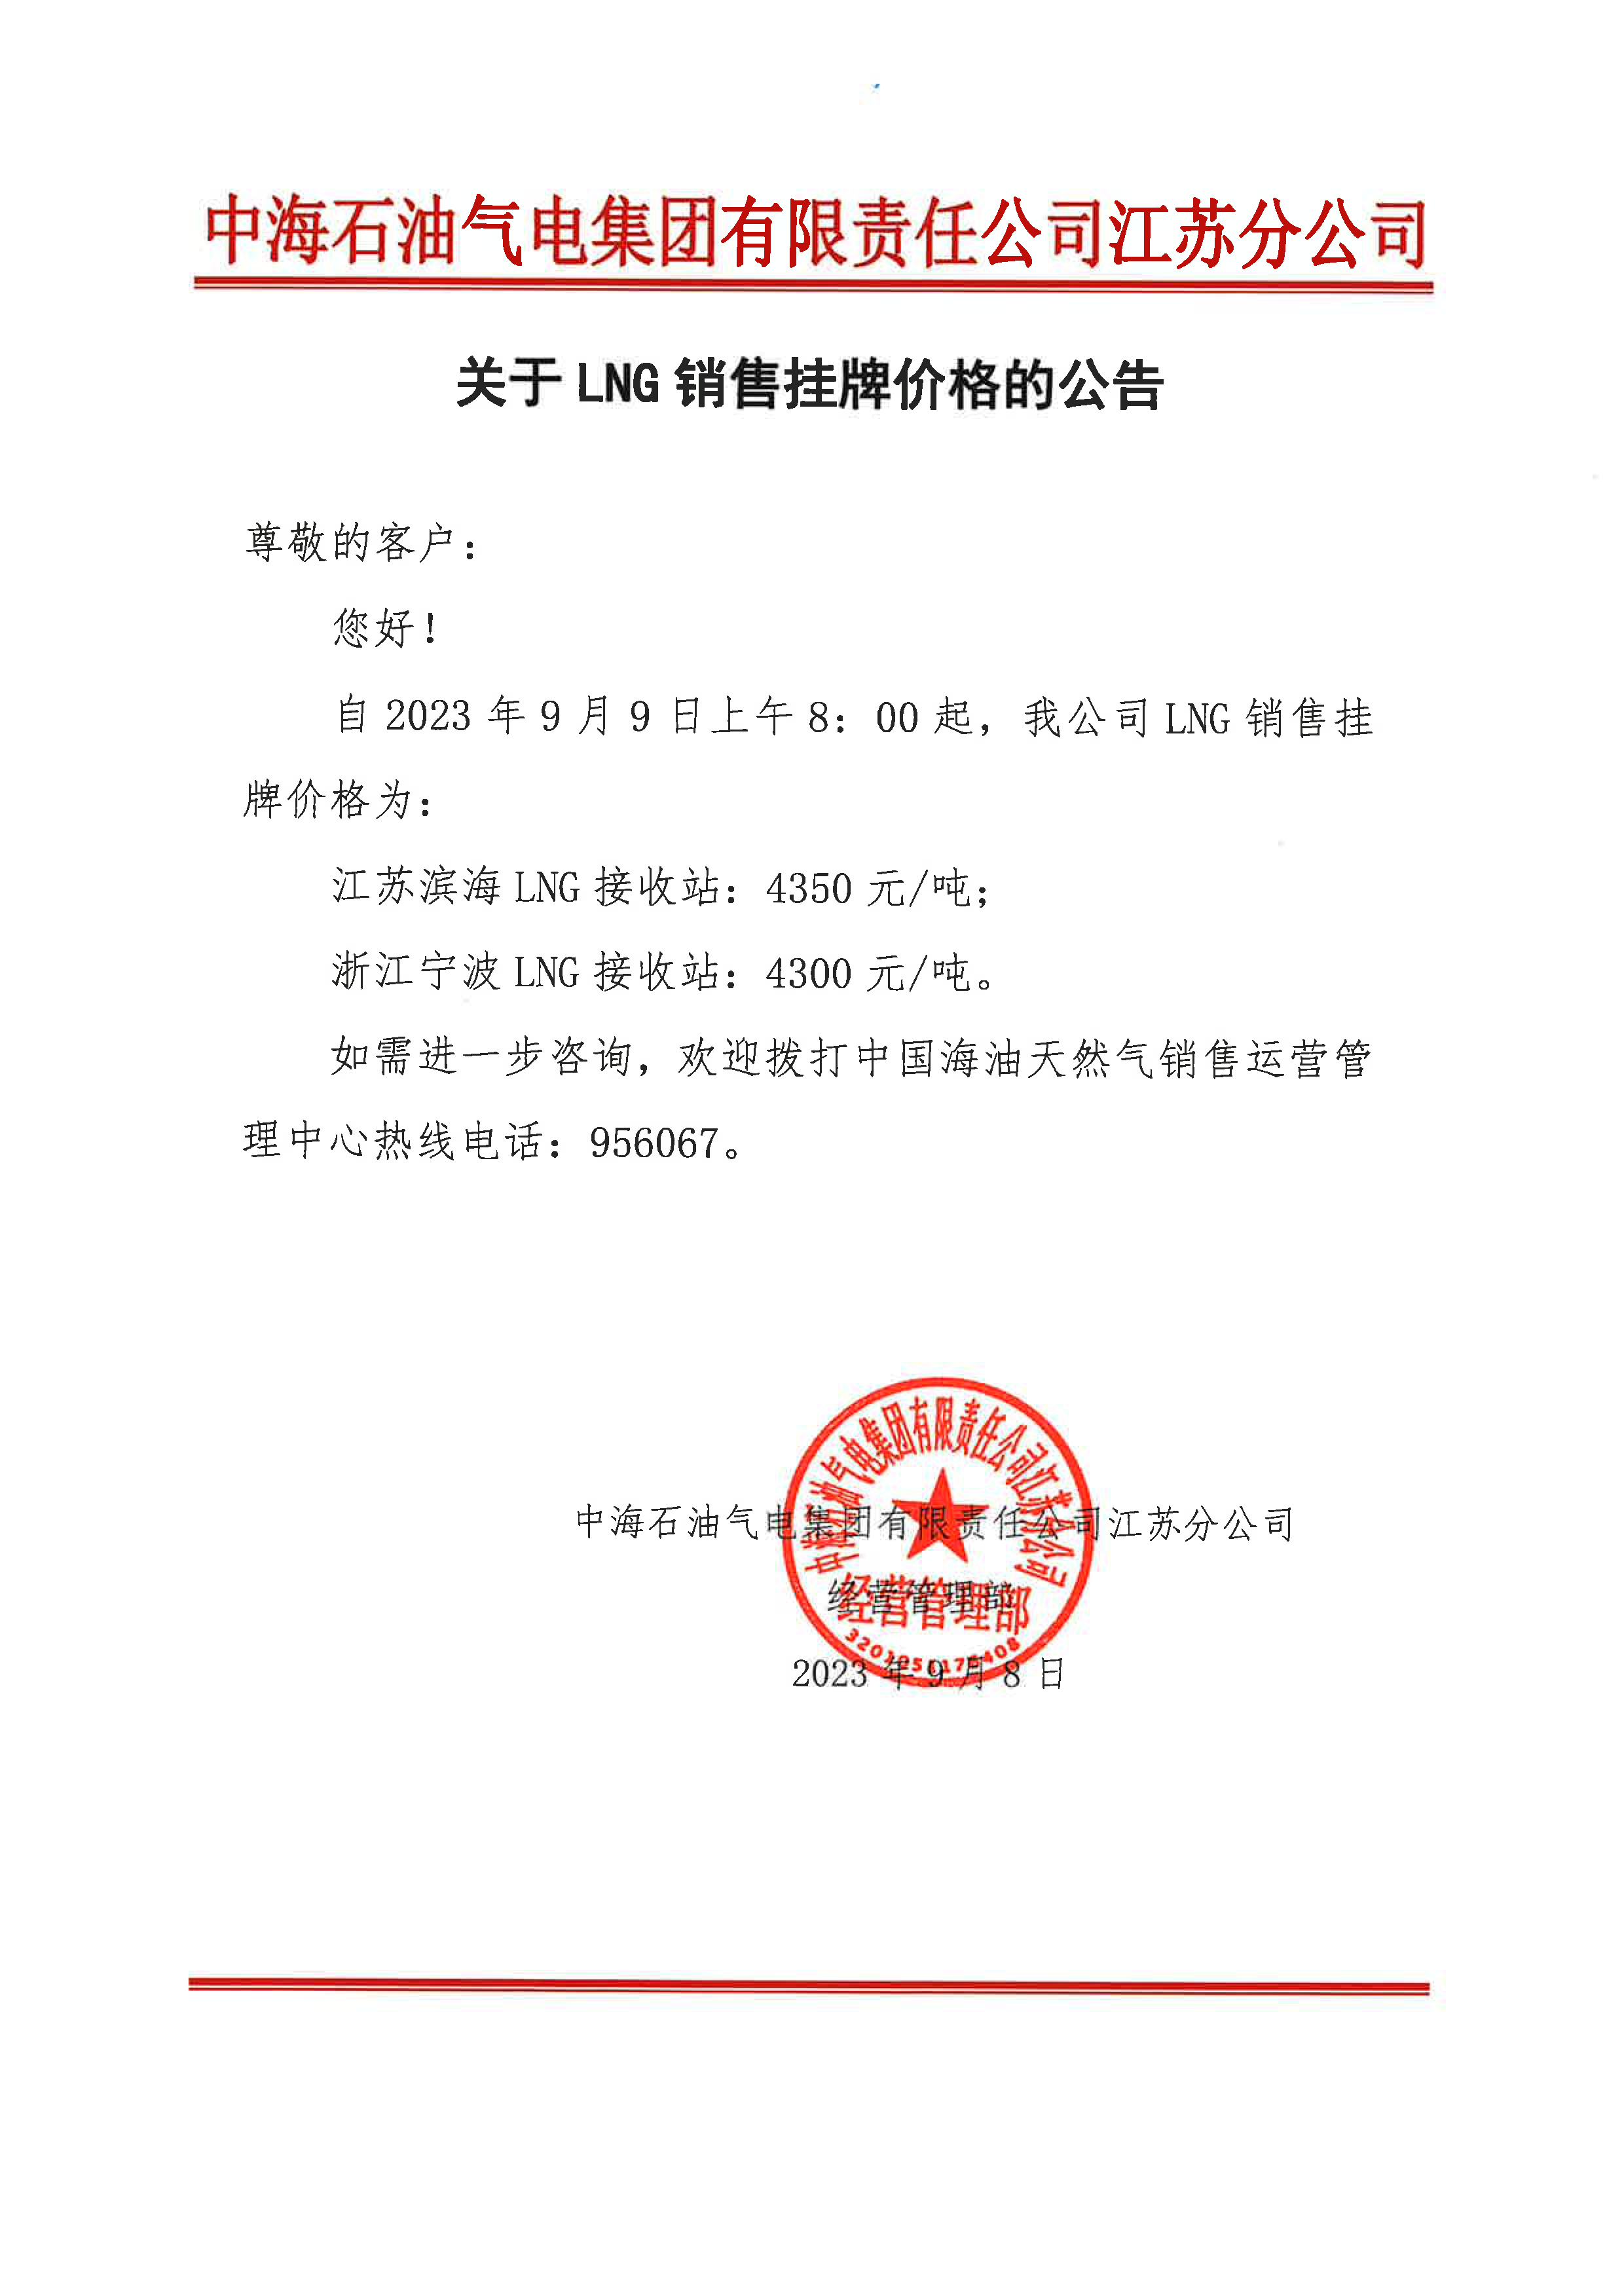 中海油江苏分公司关于9月9日华东苏皖市场价格调整公告.png